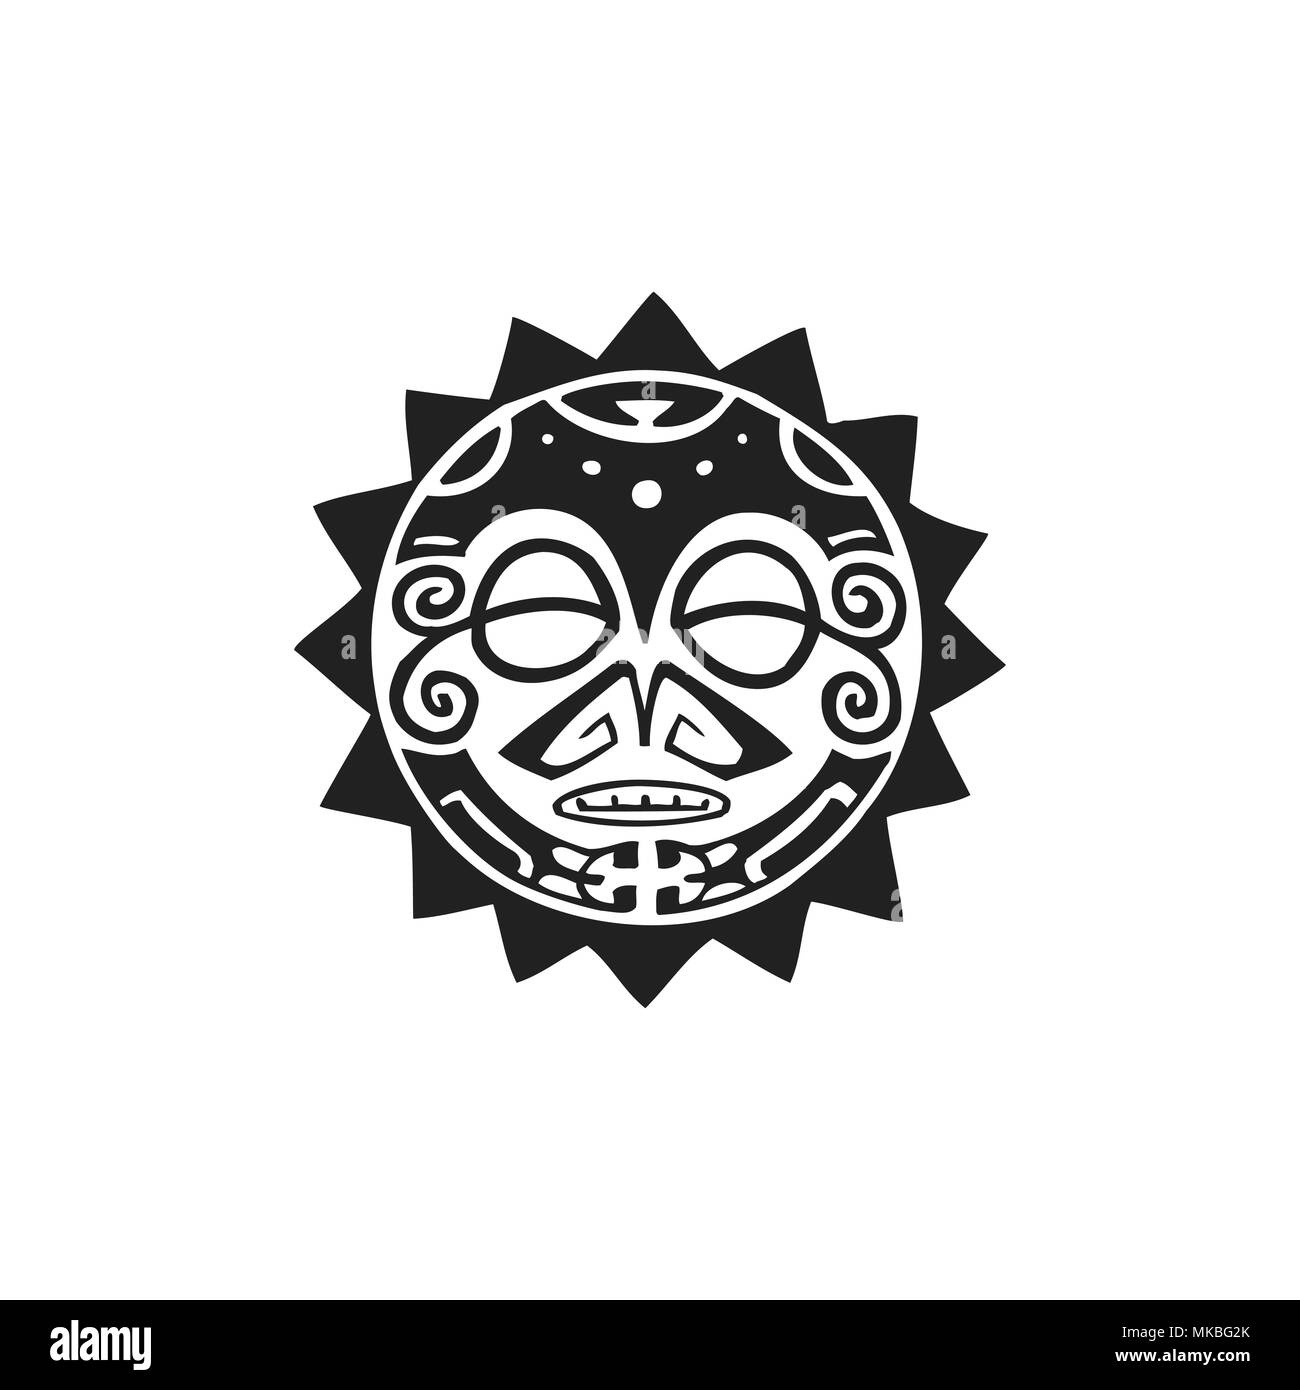 Vecteur d'encre monochrome noir indigènes à la main art populaire symbole de soleil polynésien cercle mythologique face Tiki illustration isolé sur fond blanc Illustration de Vecteur